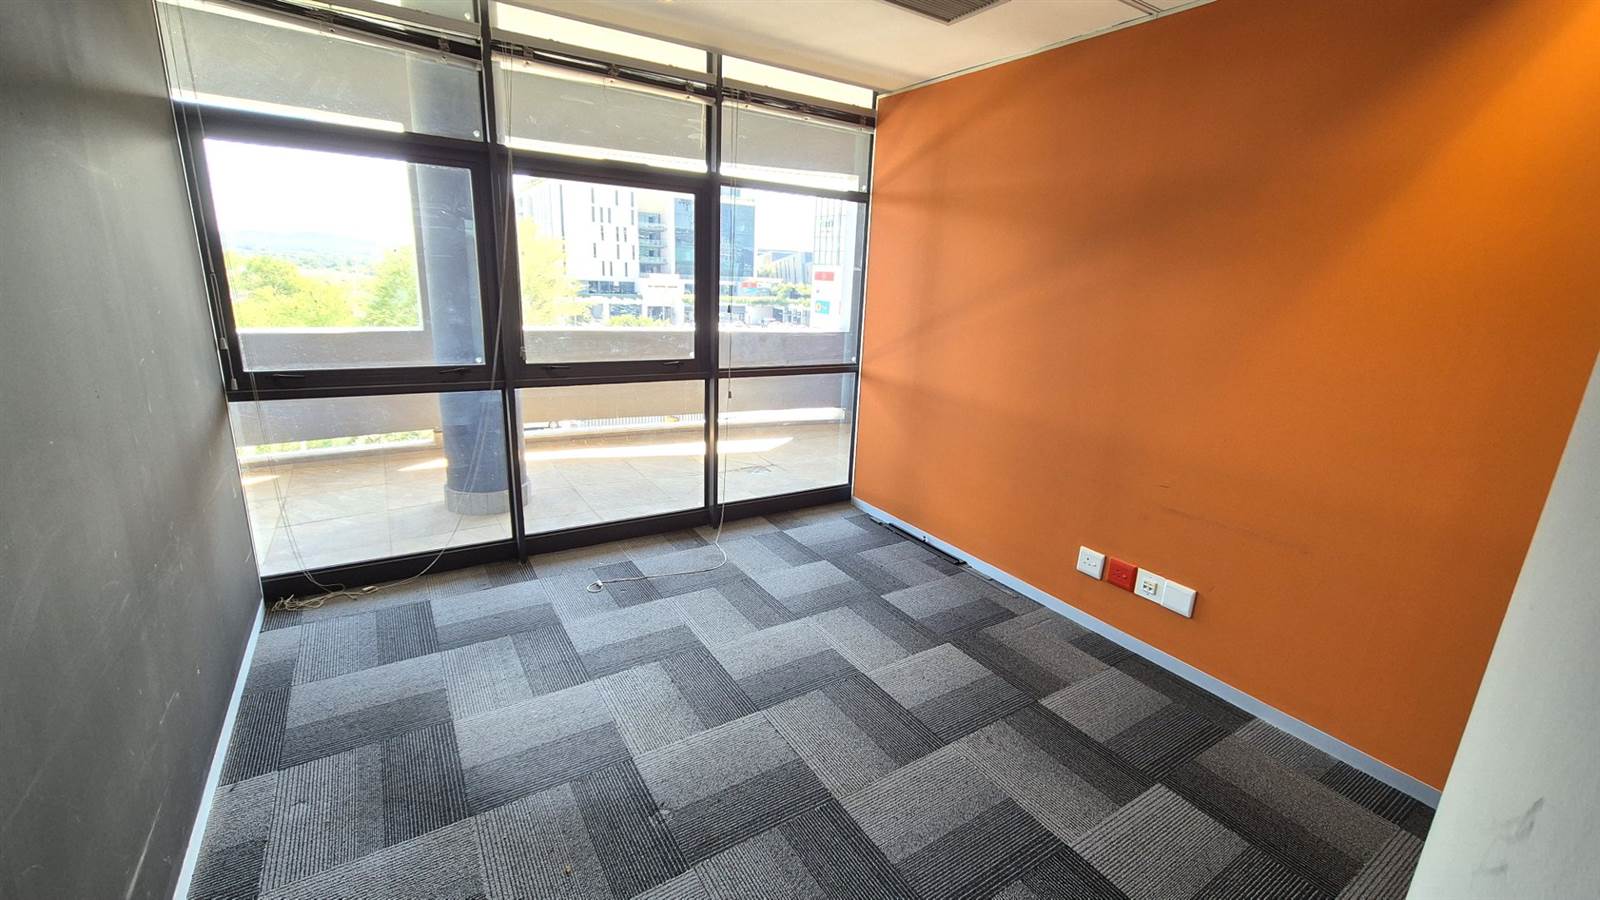 518  m² Office Space in Menlyn photo number 16